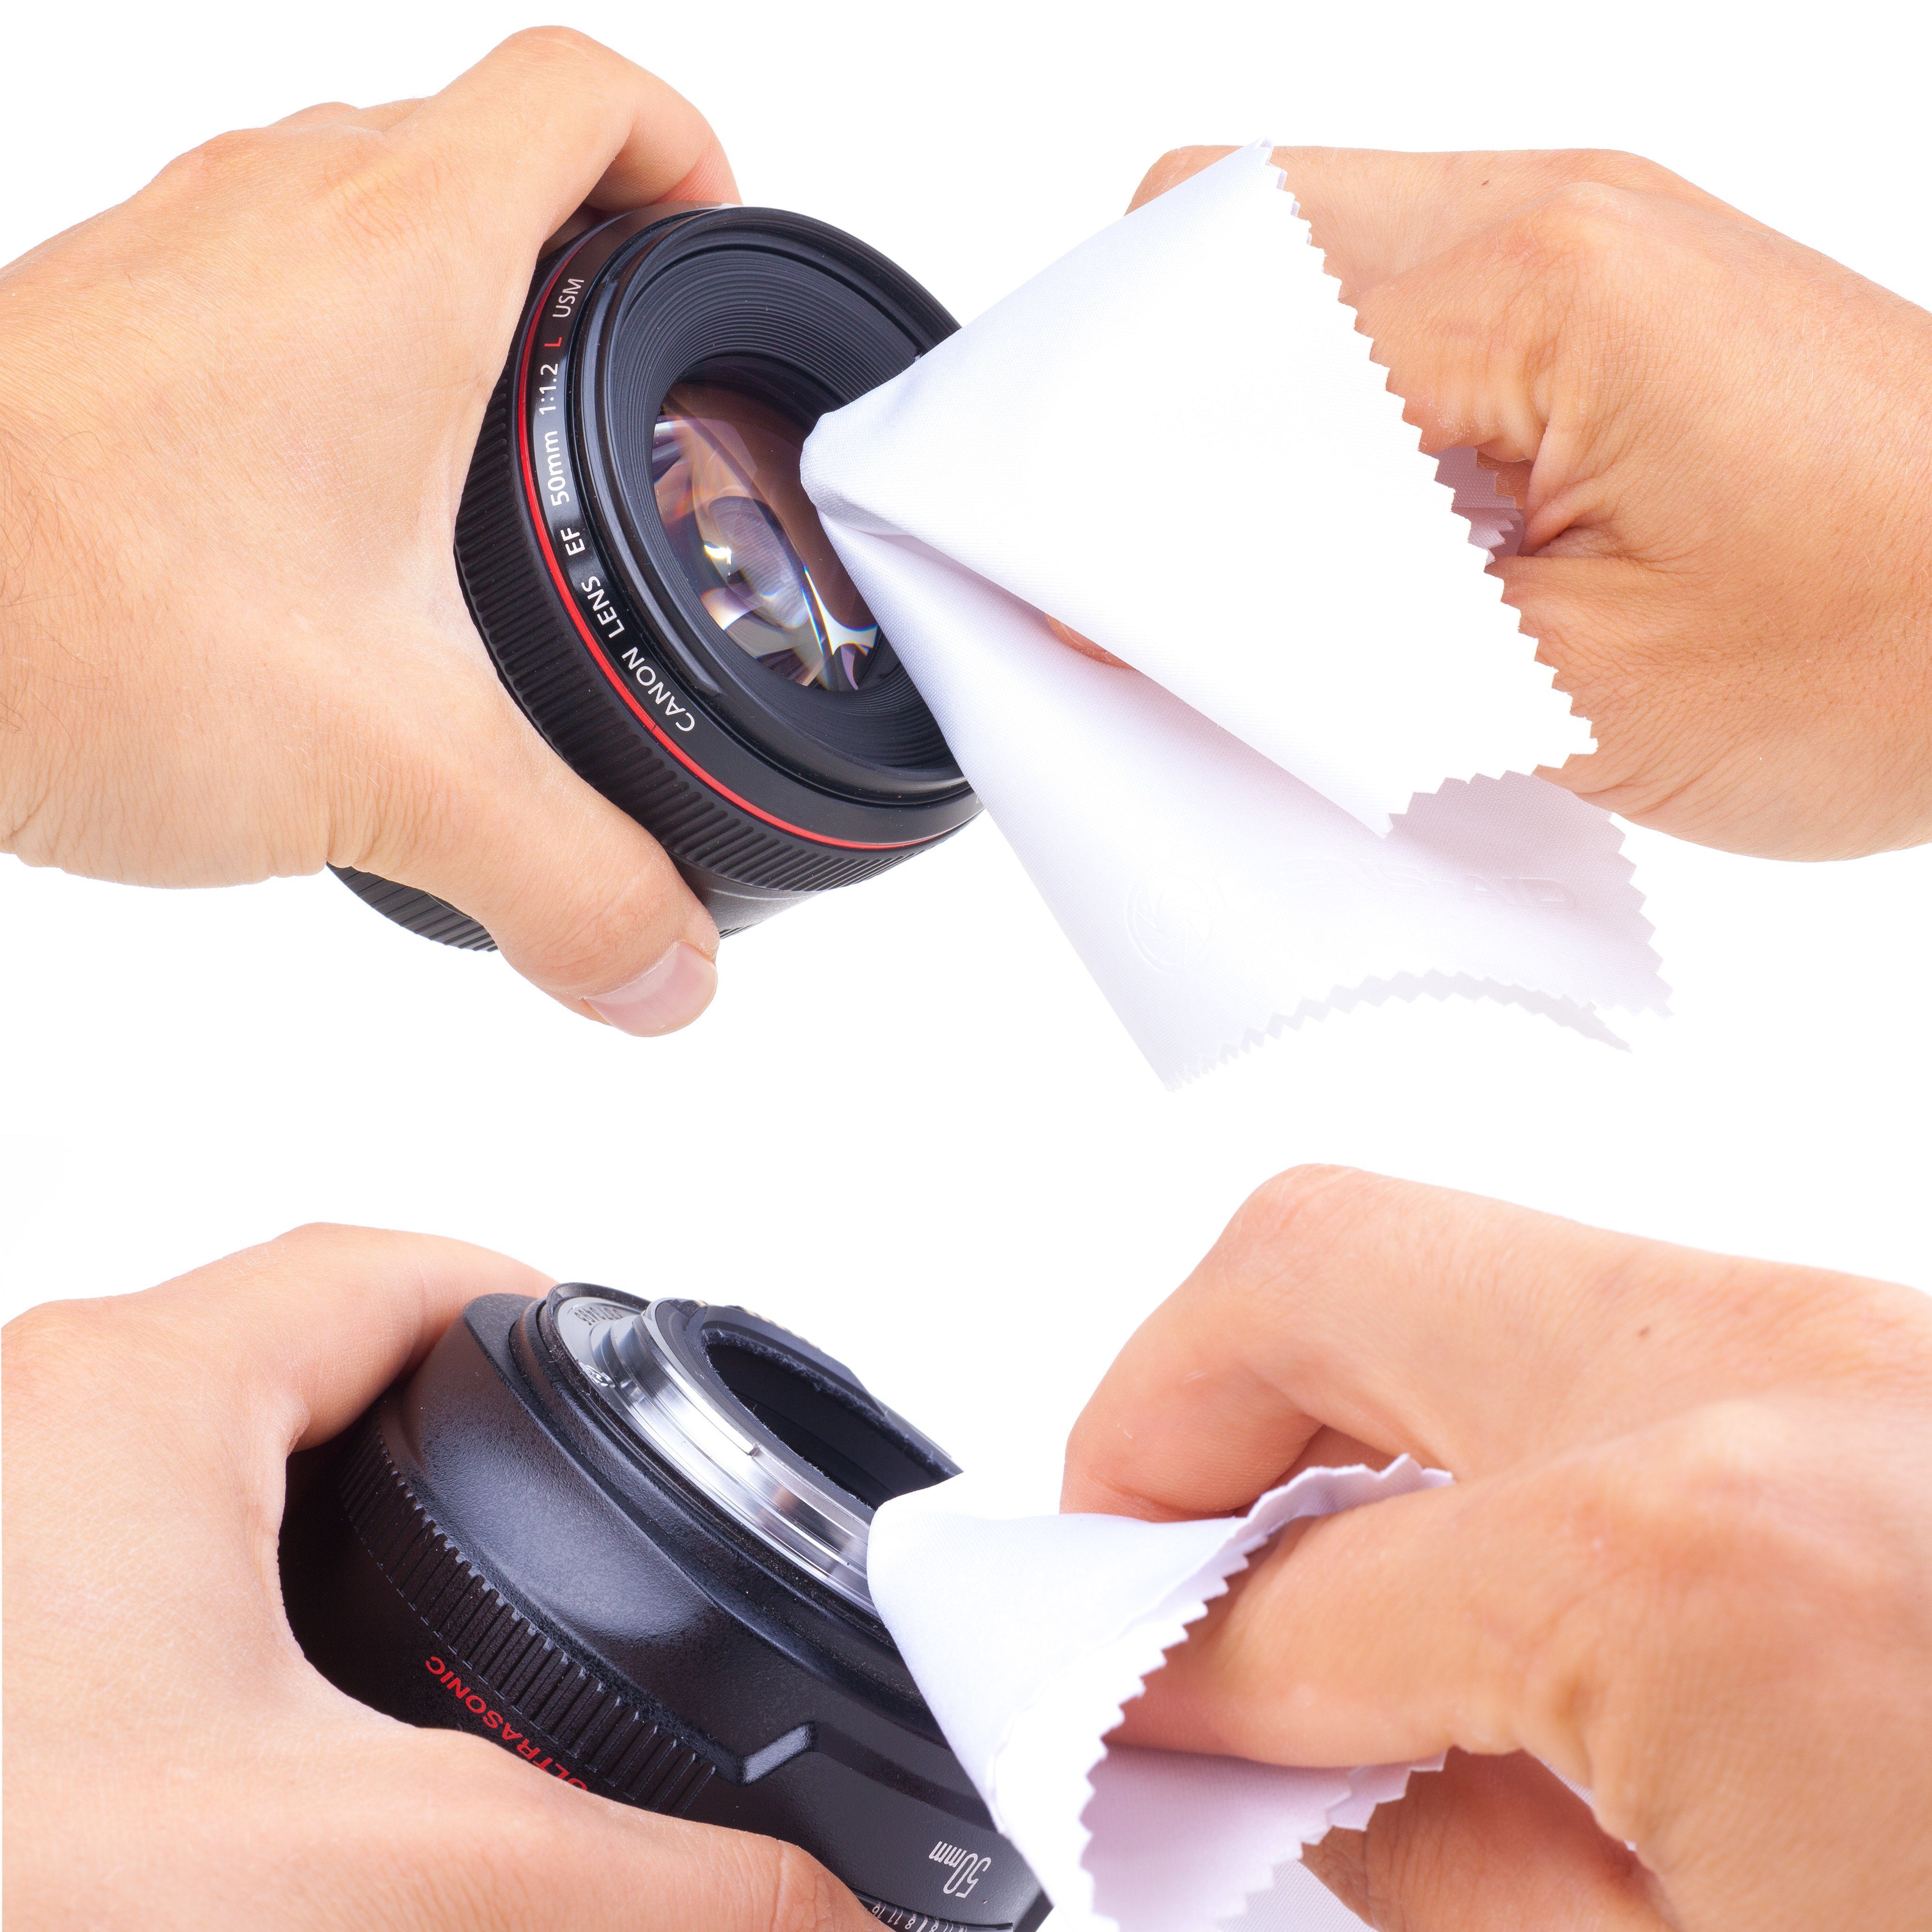 Brillen-Putztuchim für Filter, Kamera Objektiv, als Aufbewahrungsbeutel: oder praktischem Kamerazubehör-Set Smartphone Mikrofasertuch Mikrofaser-Reinigungstücher special in 5er Set Lens-Aid 10er Set edition. und Display,